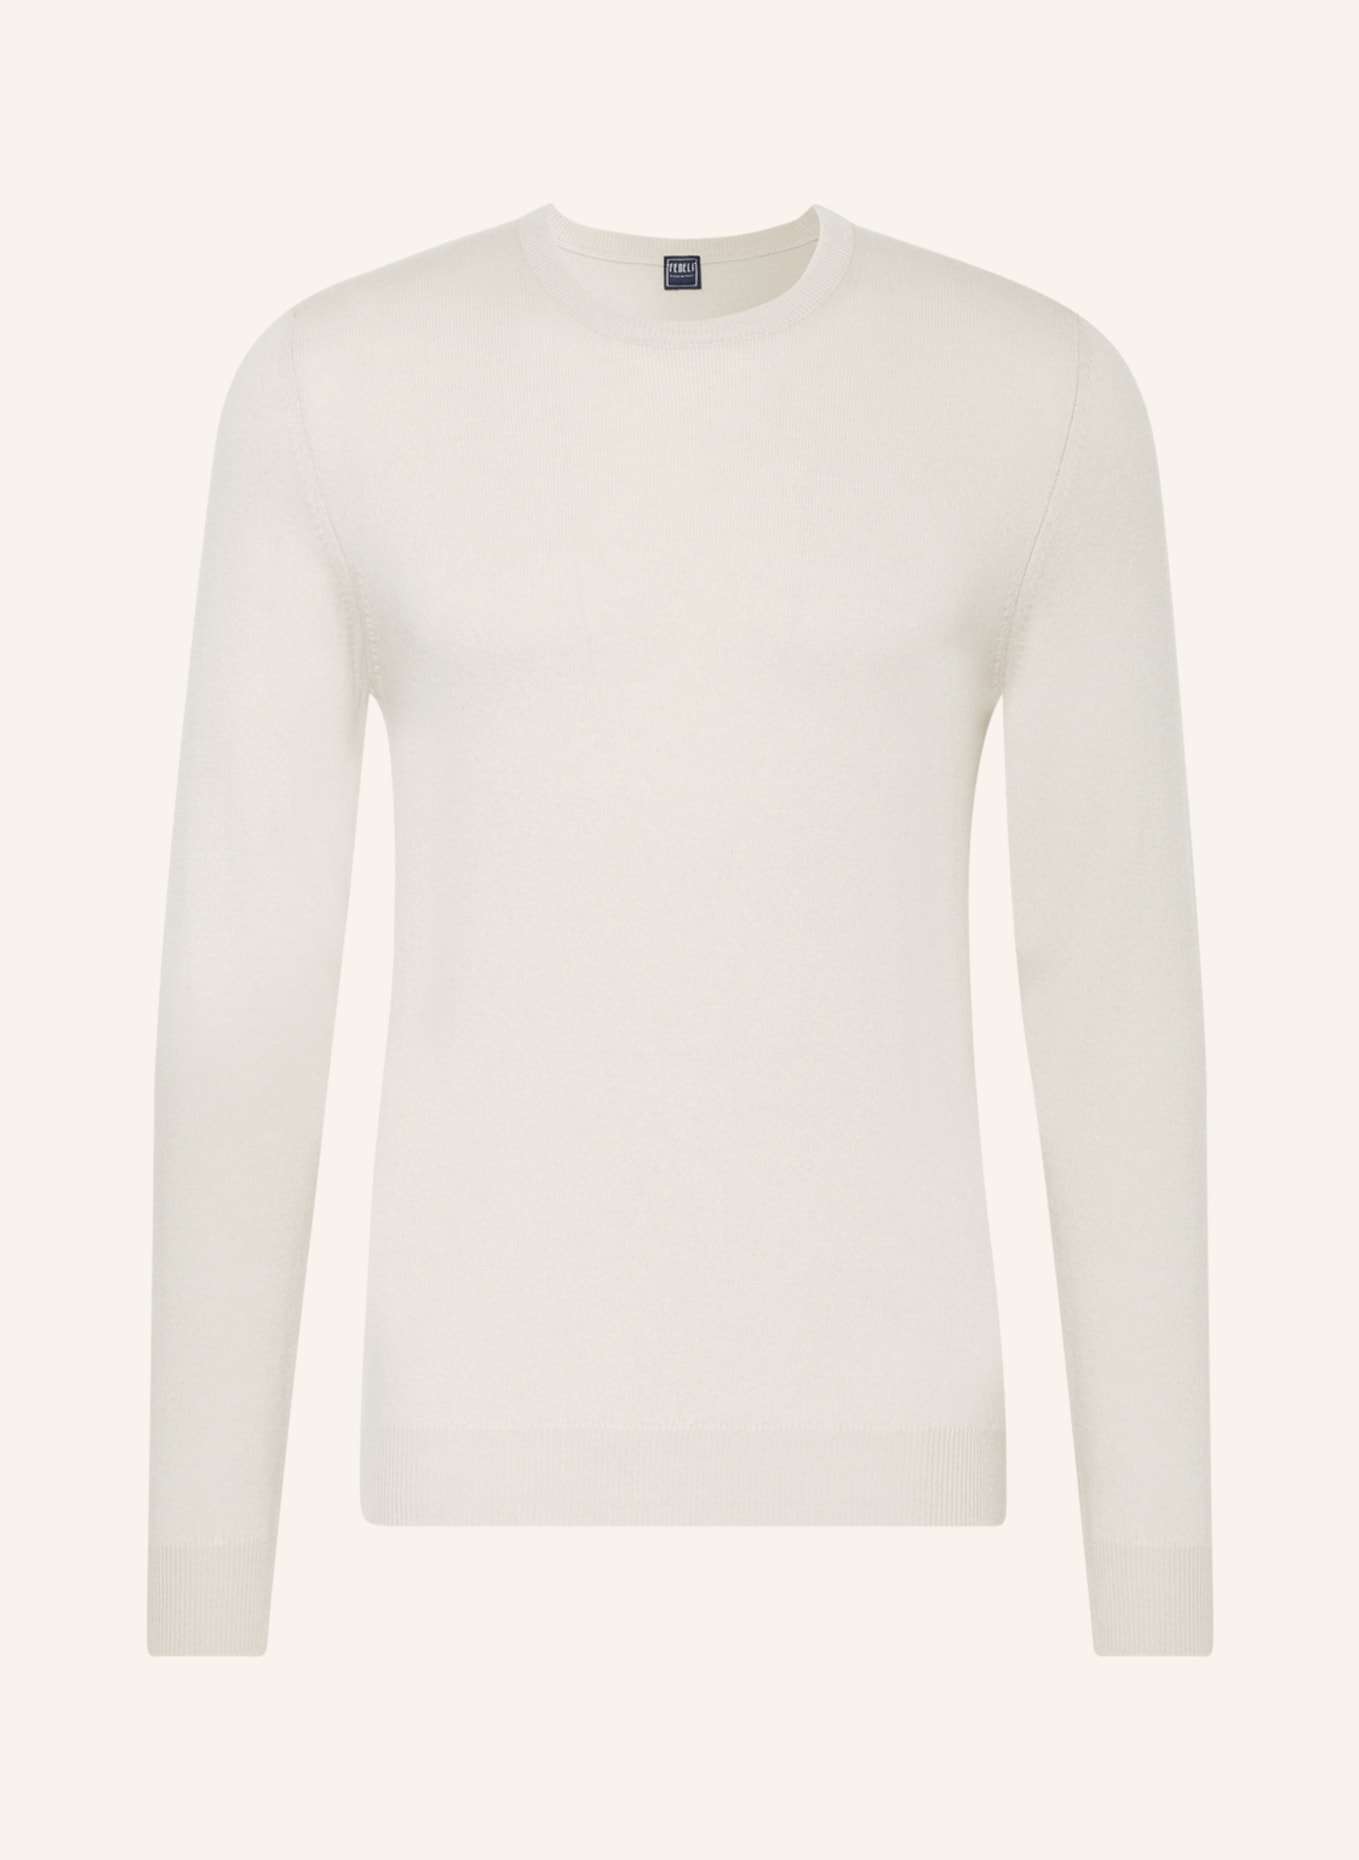 FEDELI Cashmere sweater, Color: CREAM (Image 1)